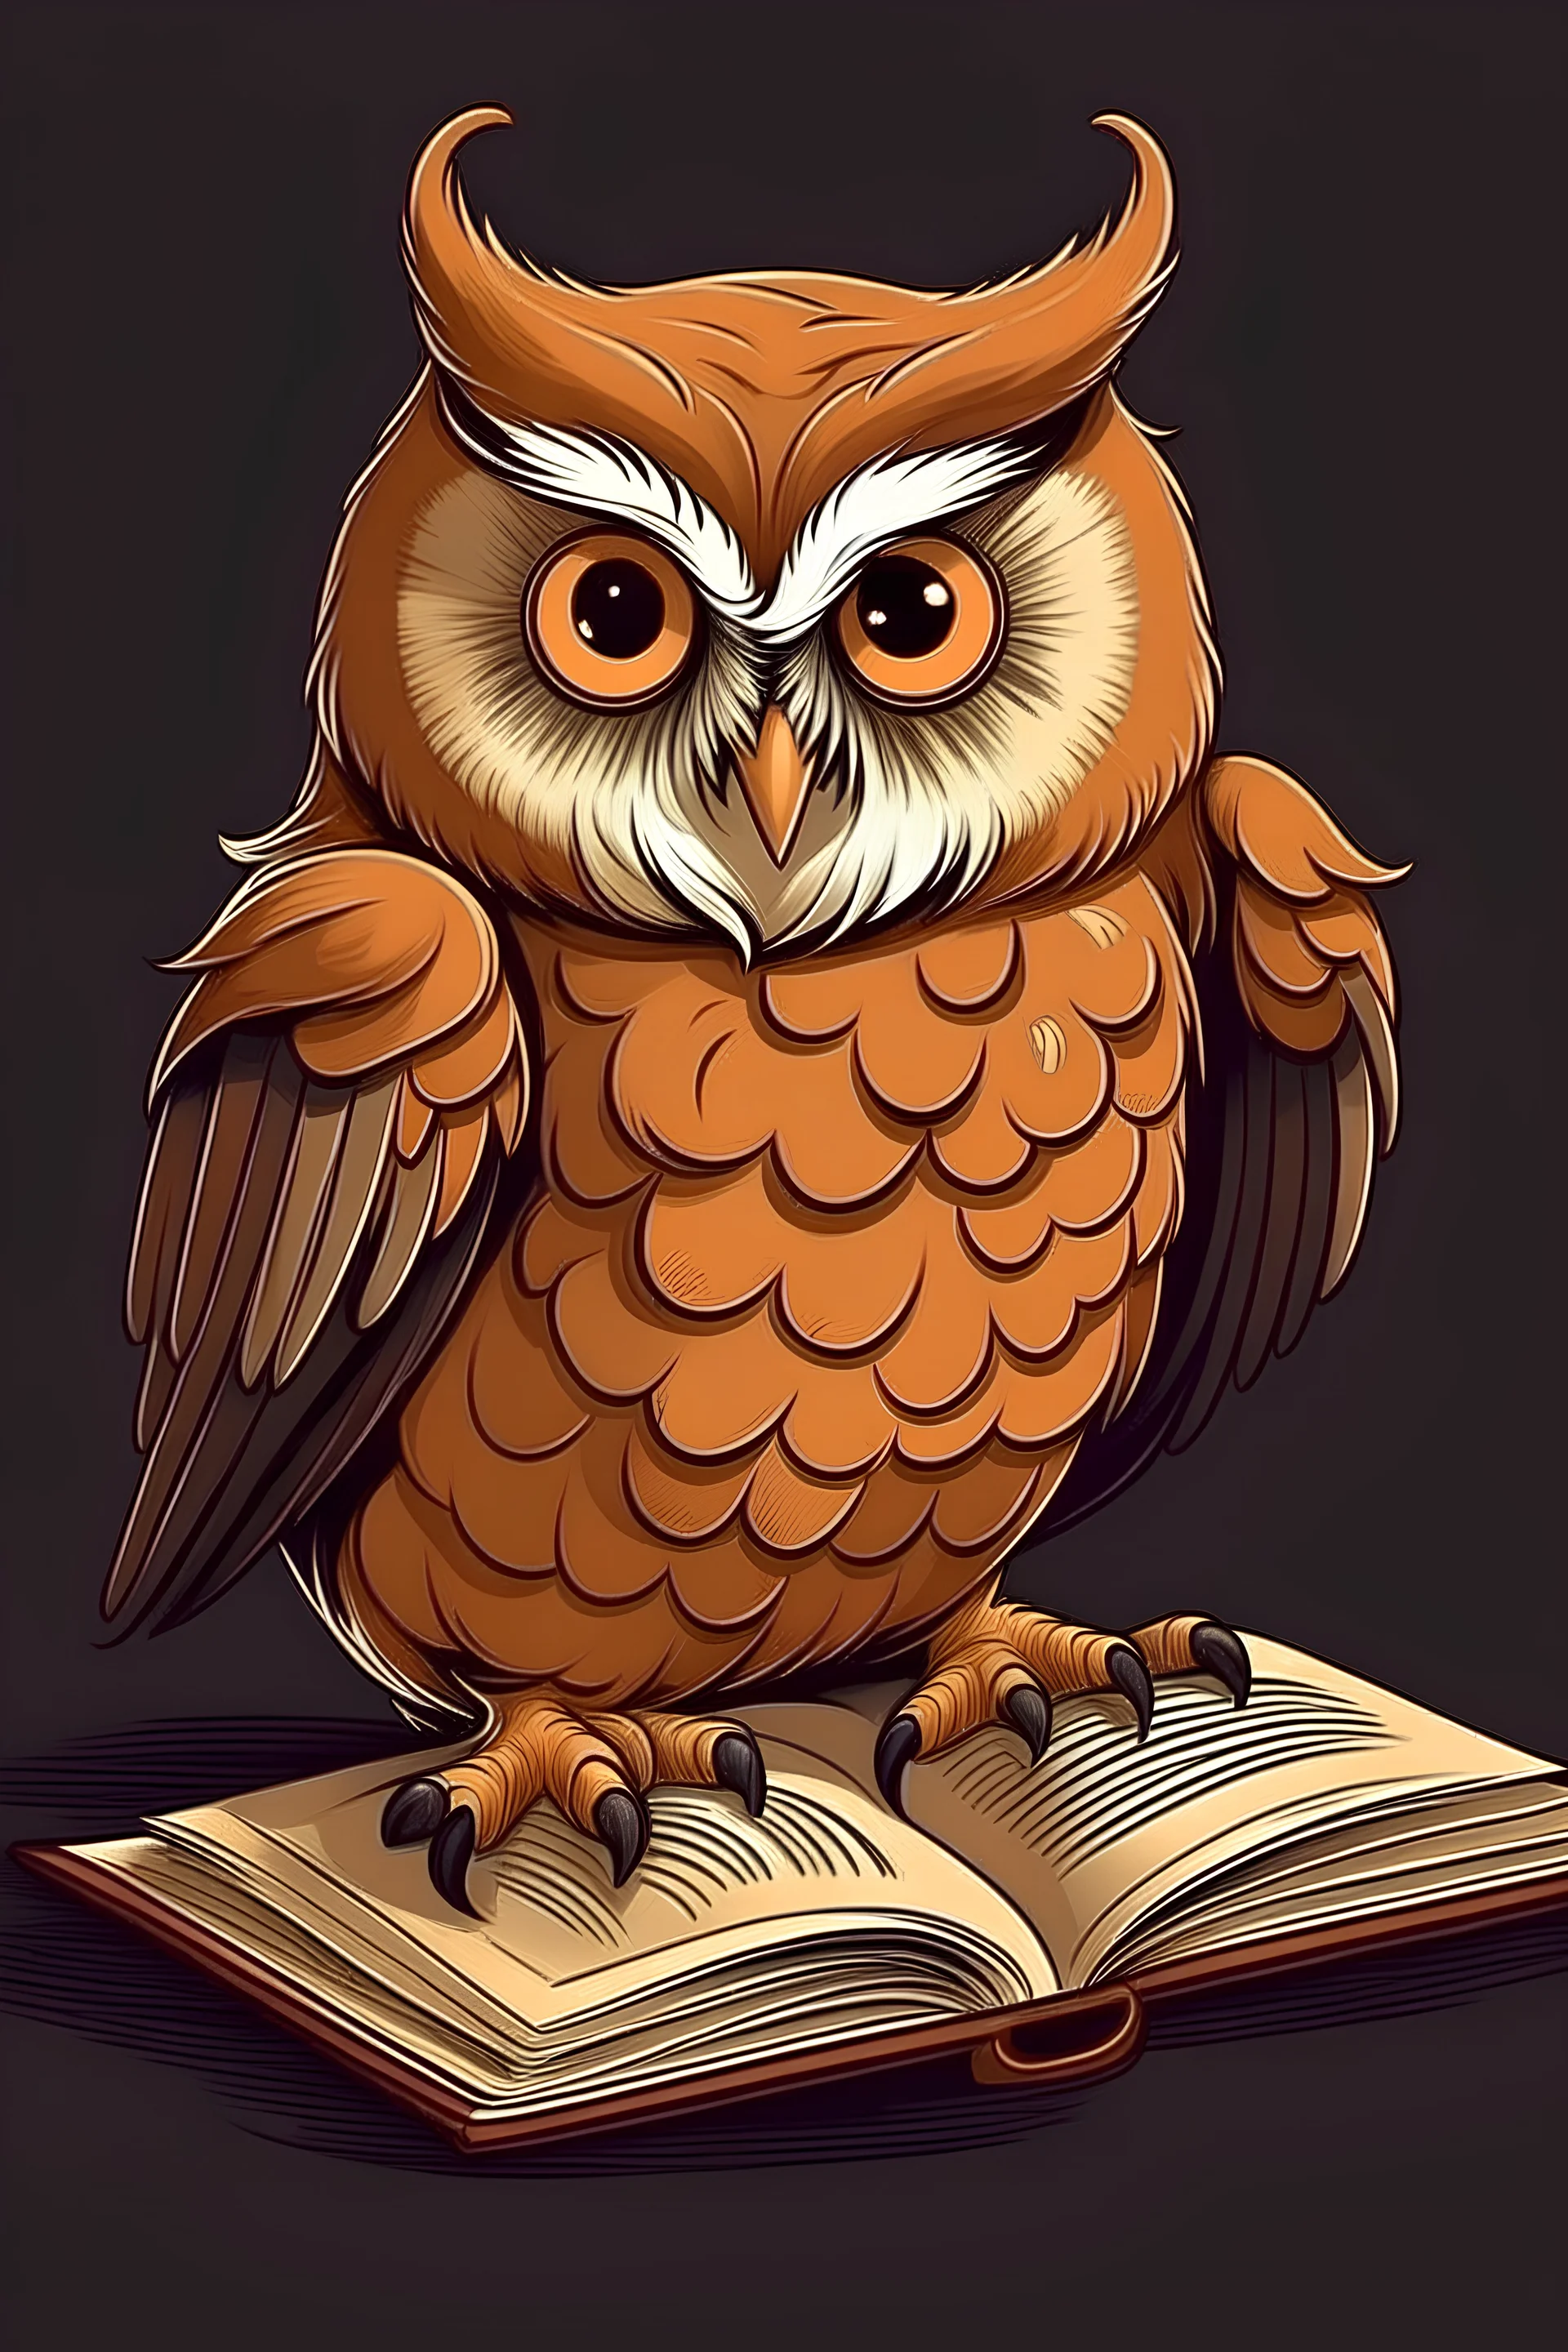 большая коричневая сова, увлеченно читающая книгу, сова и книга должны быть нарисованными в серьезном стиле